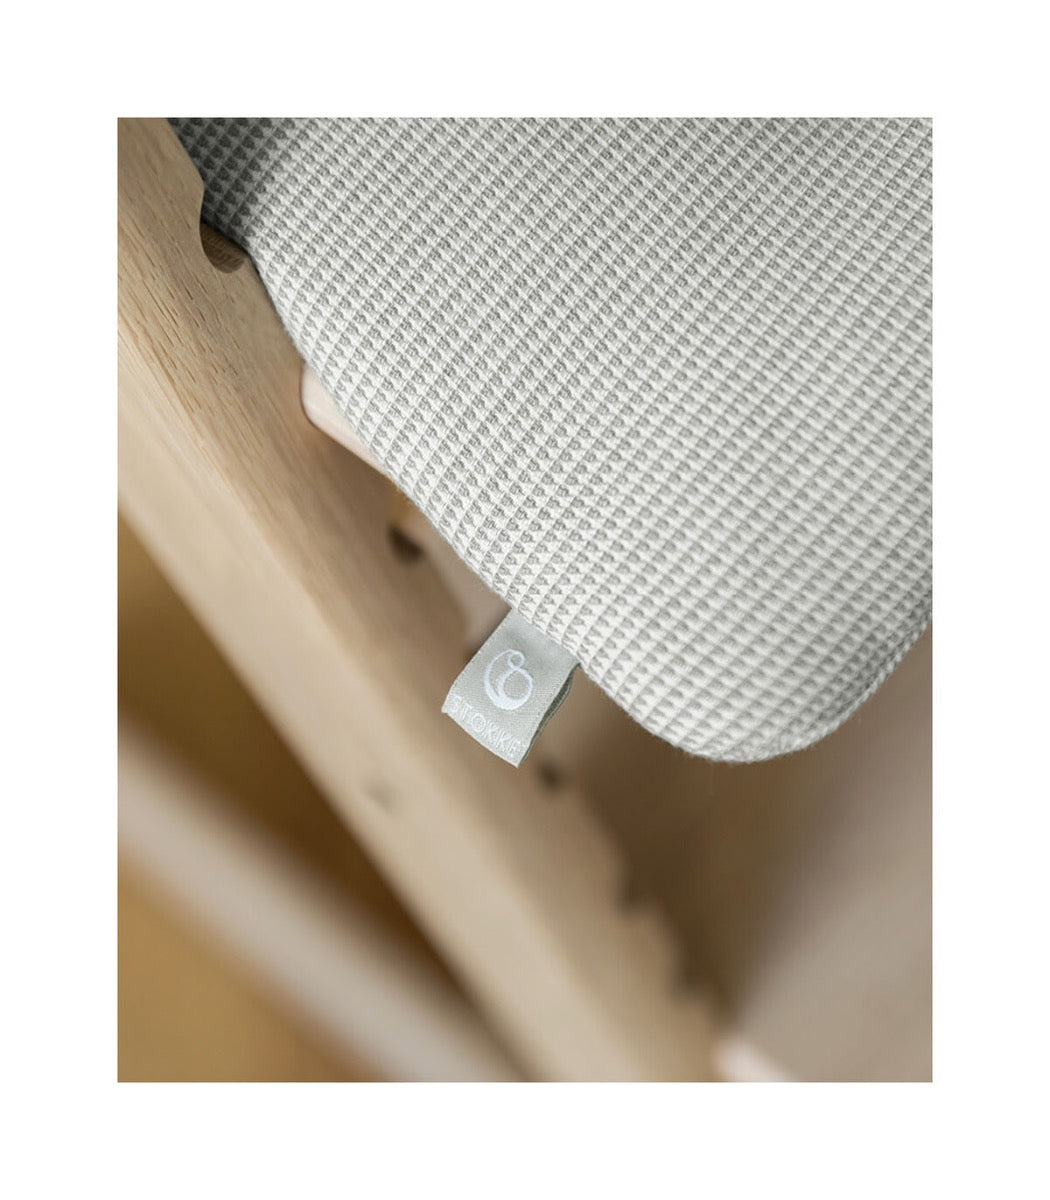  Stokke Tripp Trapp - Cojín clásico, color gris nórdico, par con  silla Tripp Trapp y silla alta para apoyo y comodidad, lavable a máquina,  se adapta a todas las sillas Tripp